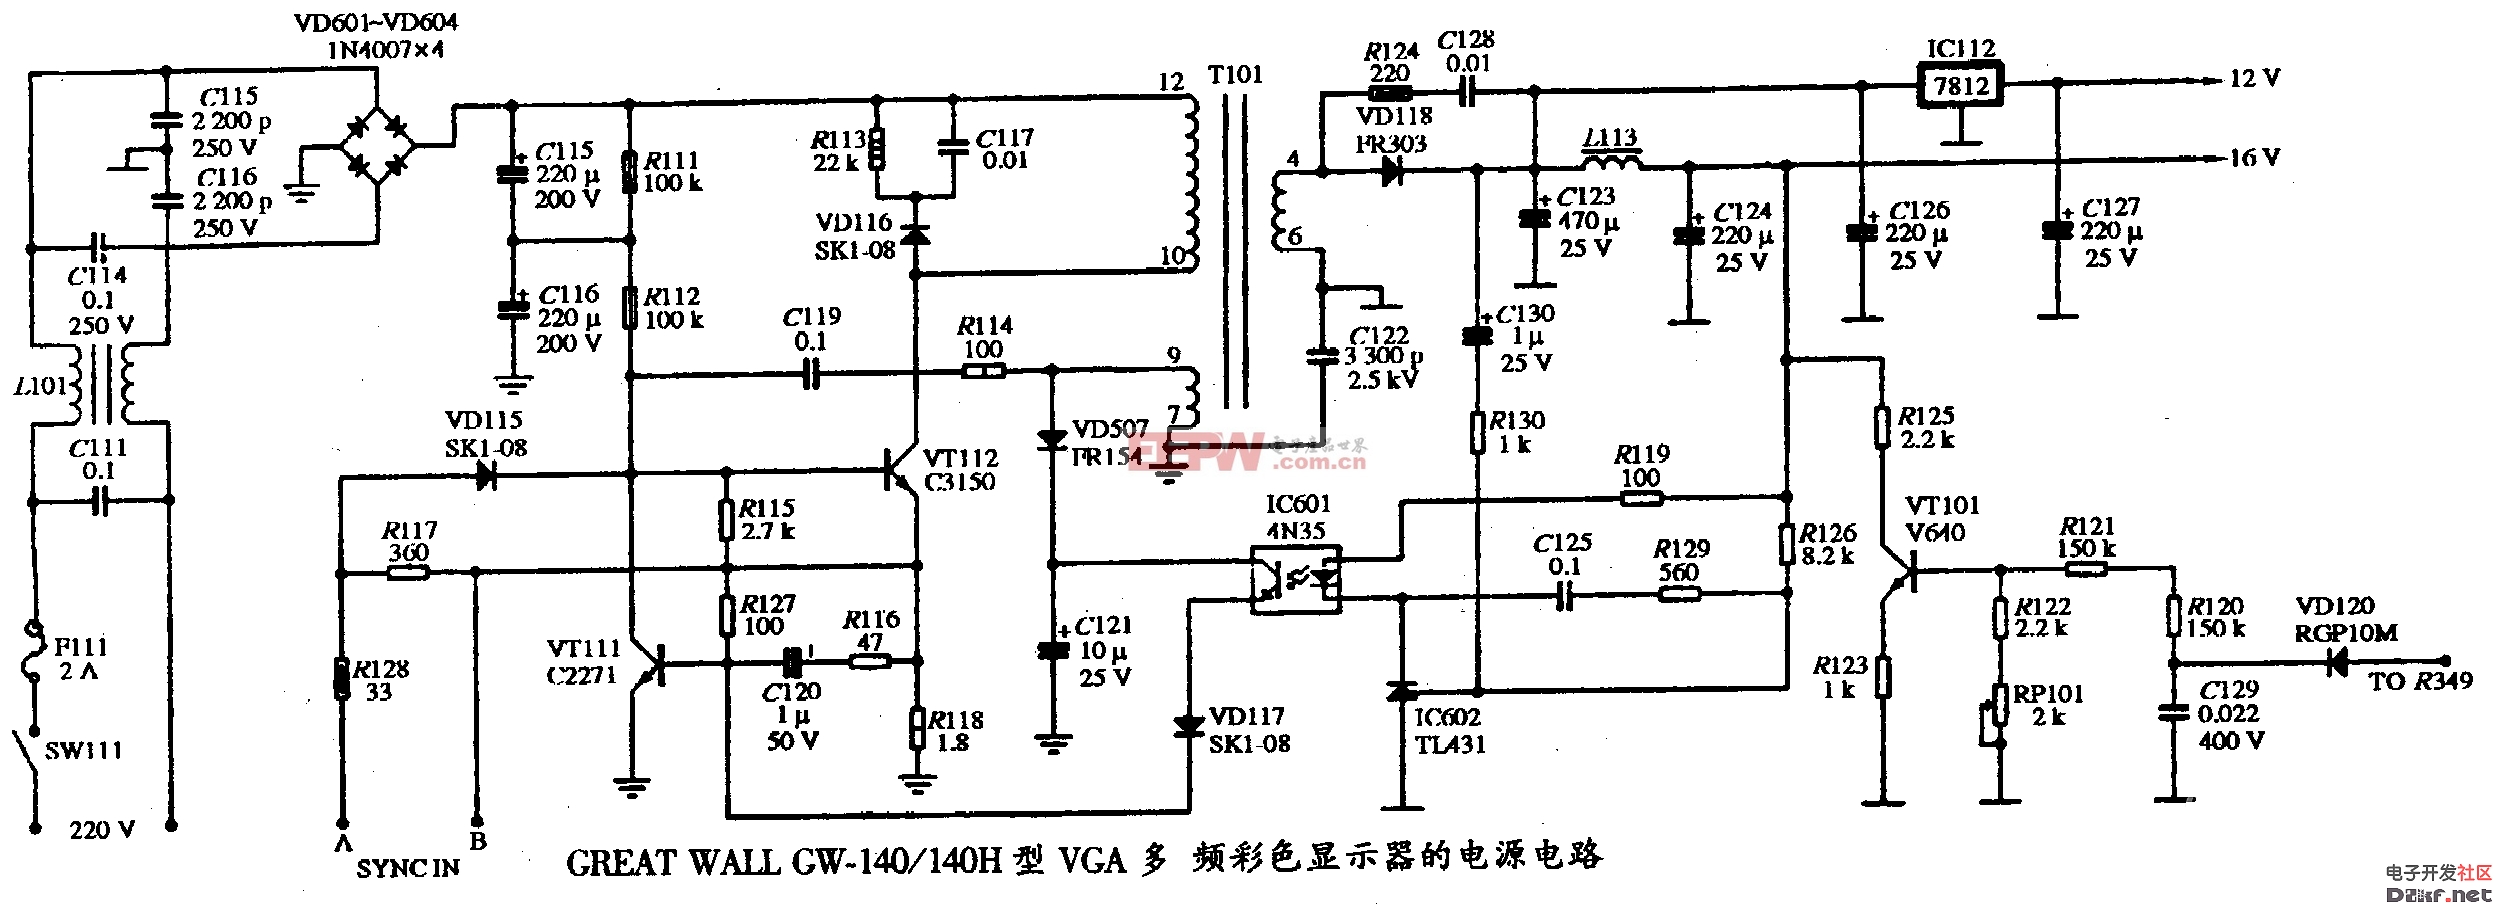 GREAT WALL GW-140/140H型VGA多频彩色显示器的电源电路图